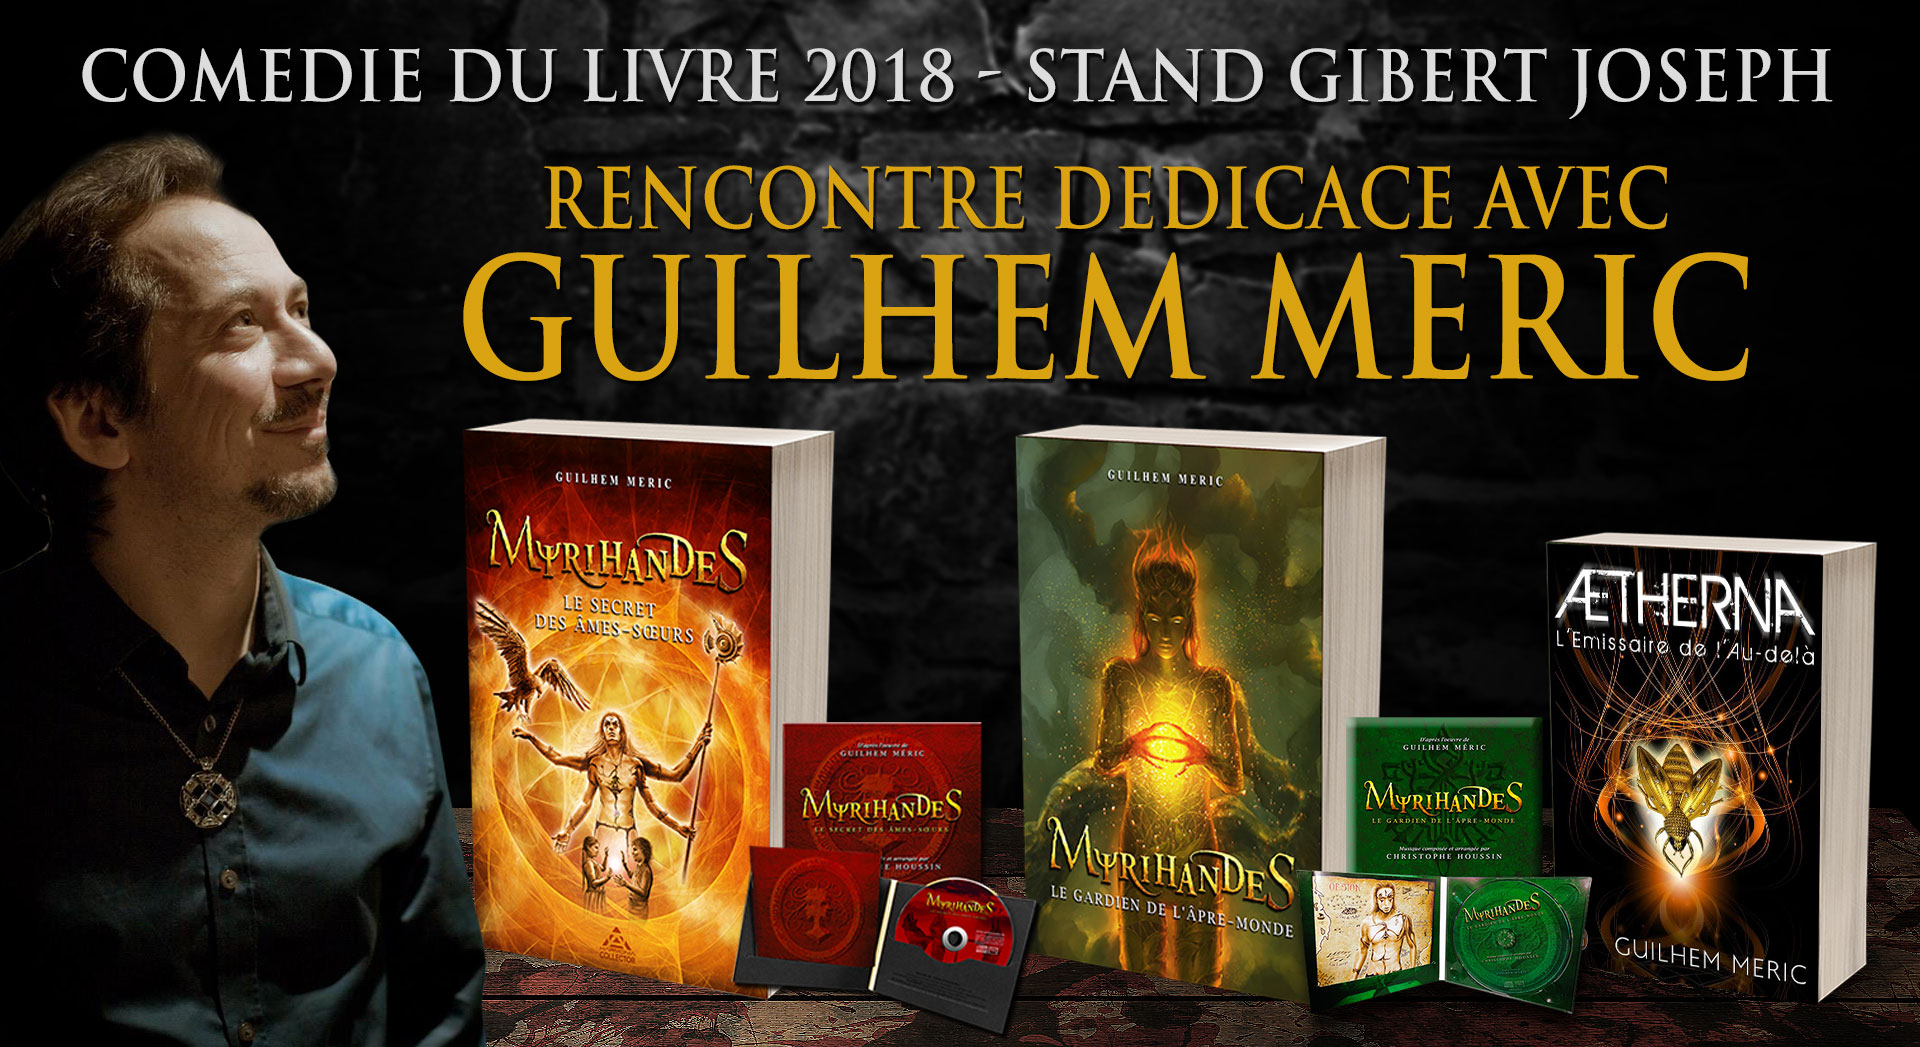 Dedicaces Guilhem Méric